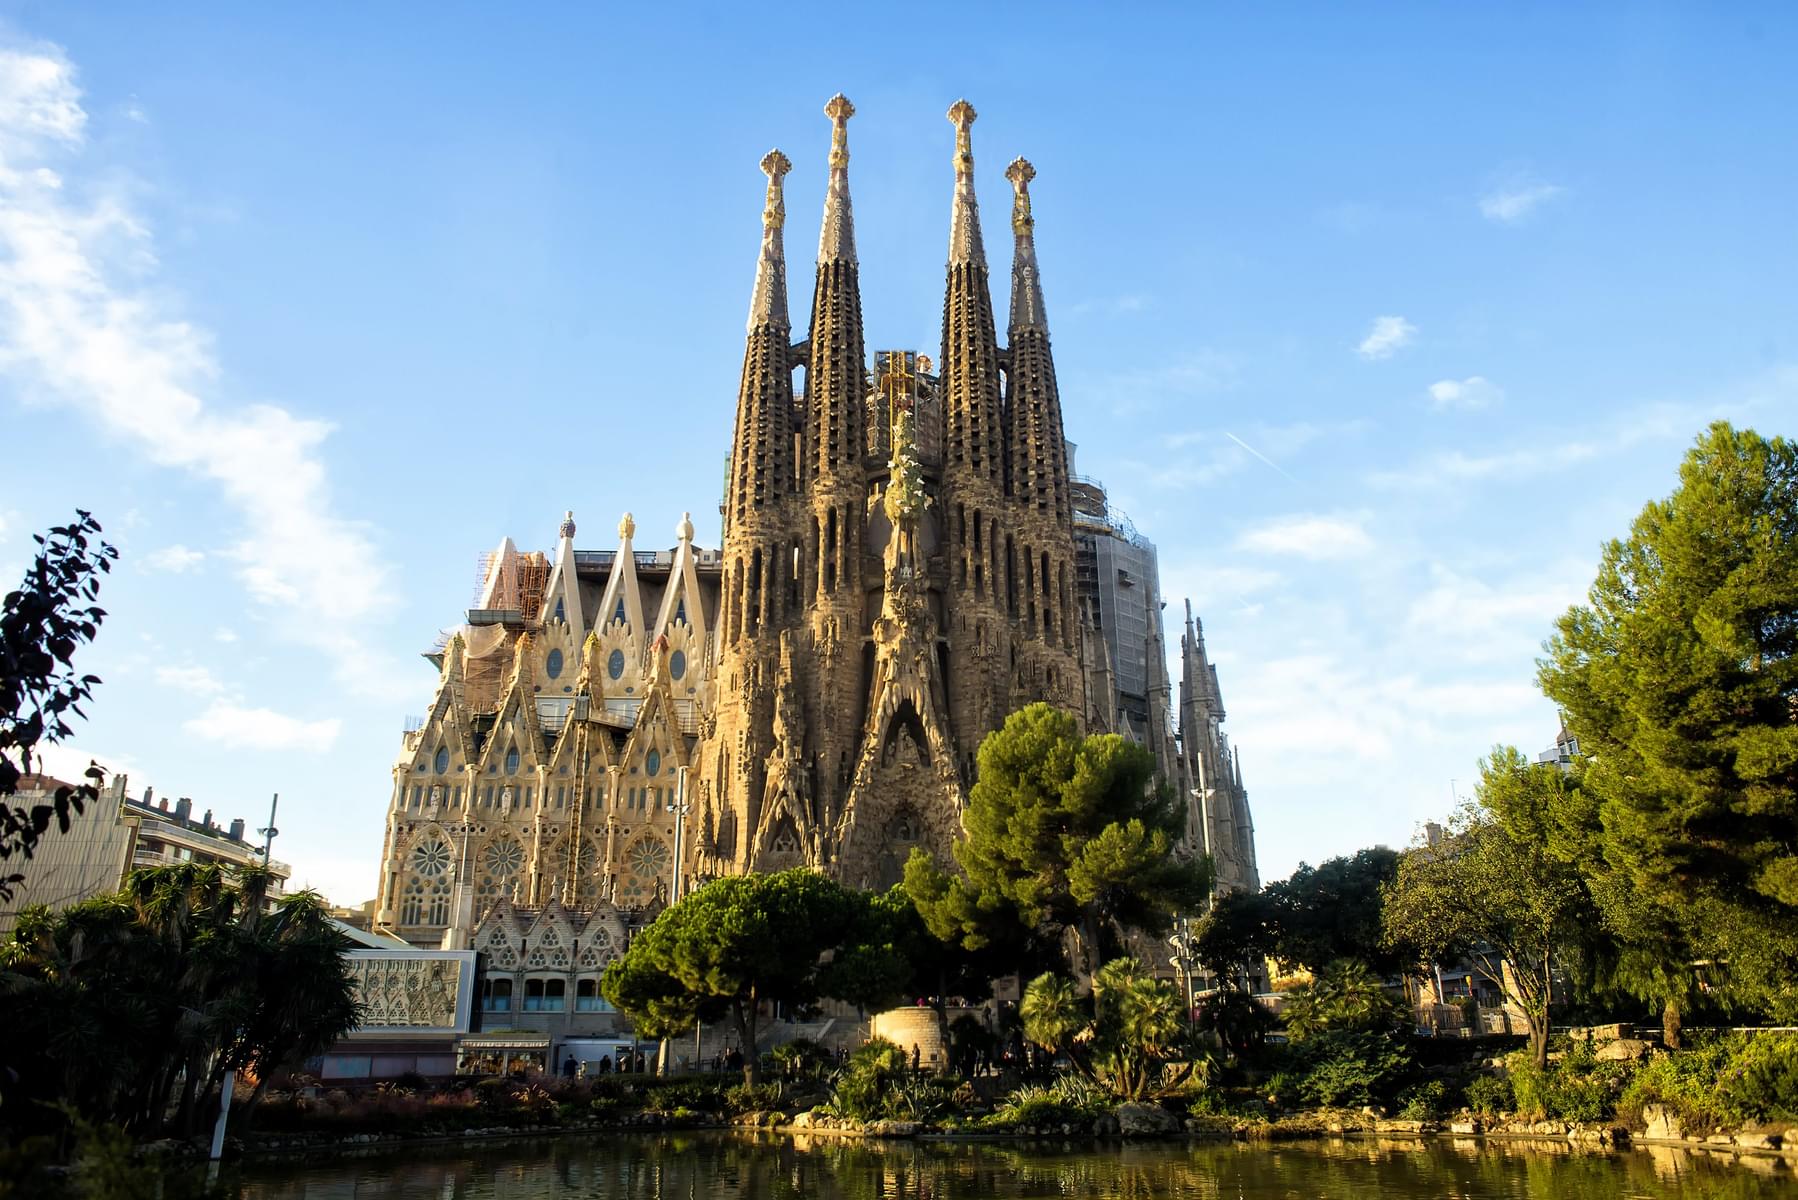 How To Reach Sagrada Familia